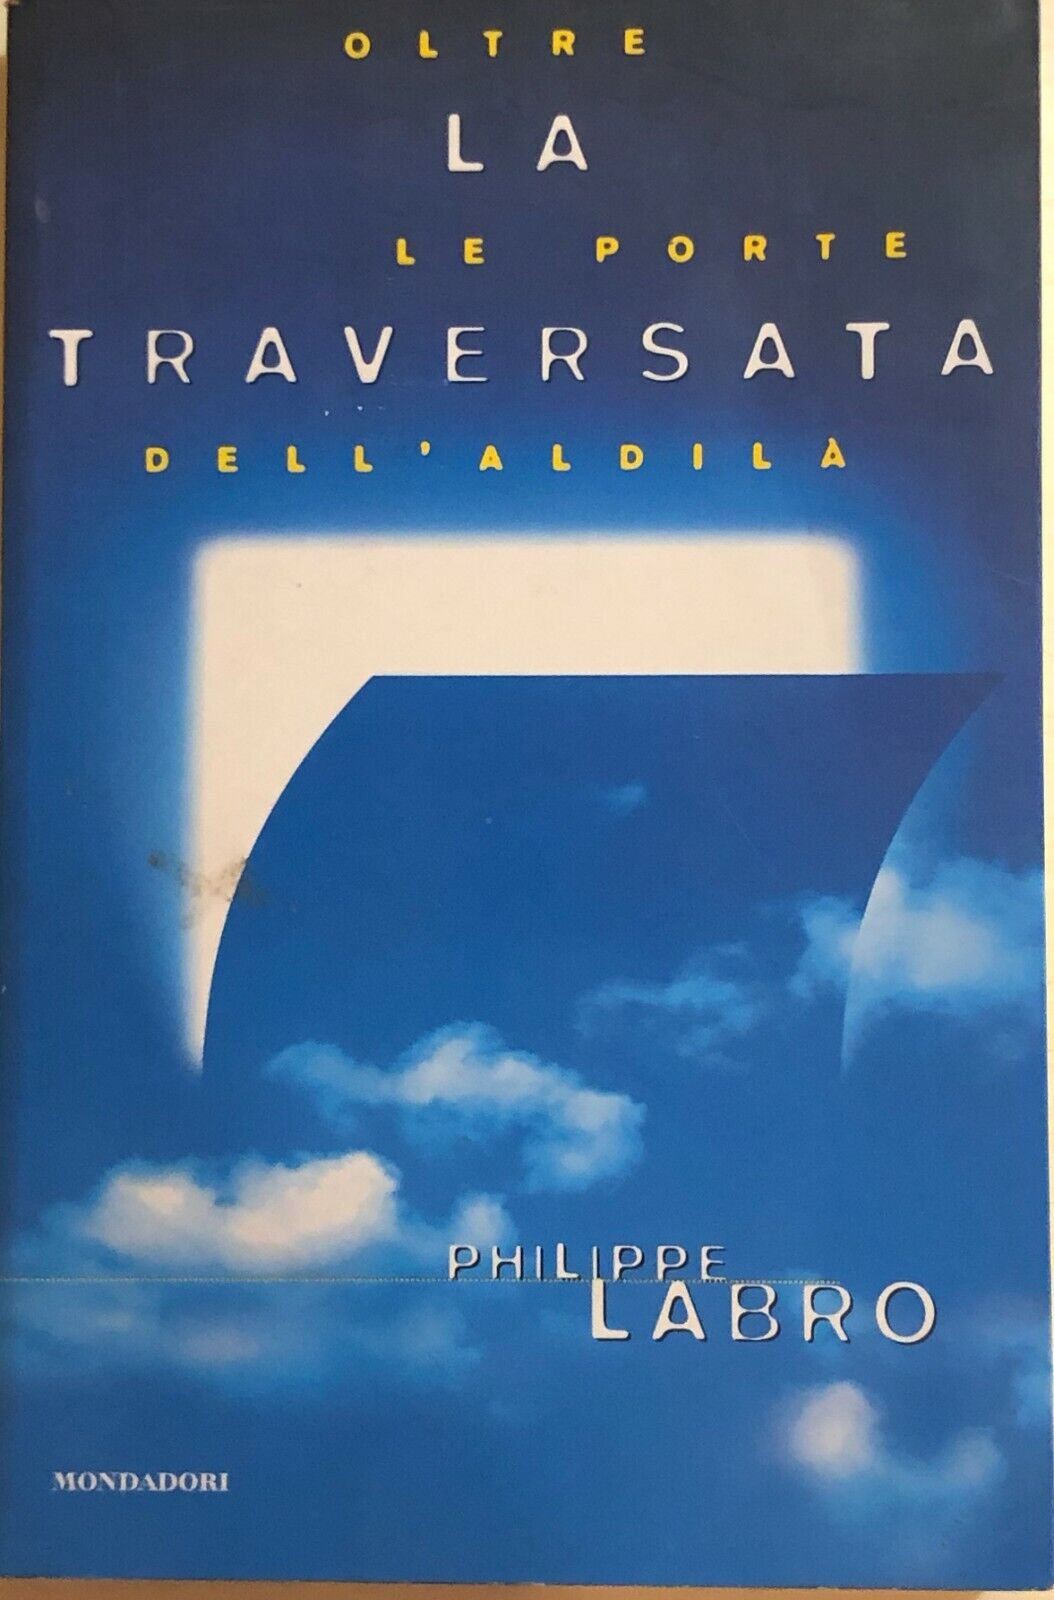 La traversata, Oltre le porte delL'aldil? di Philippe Labro, 1998, Mondadori